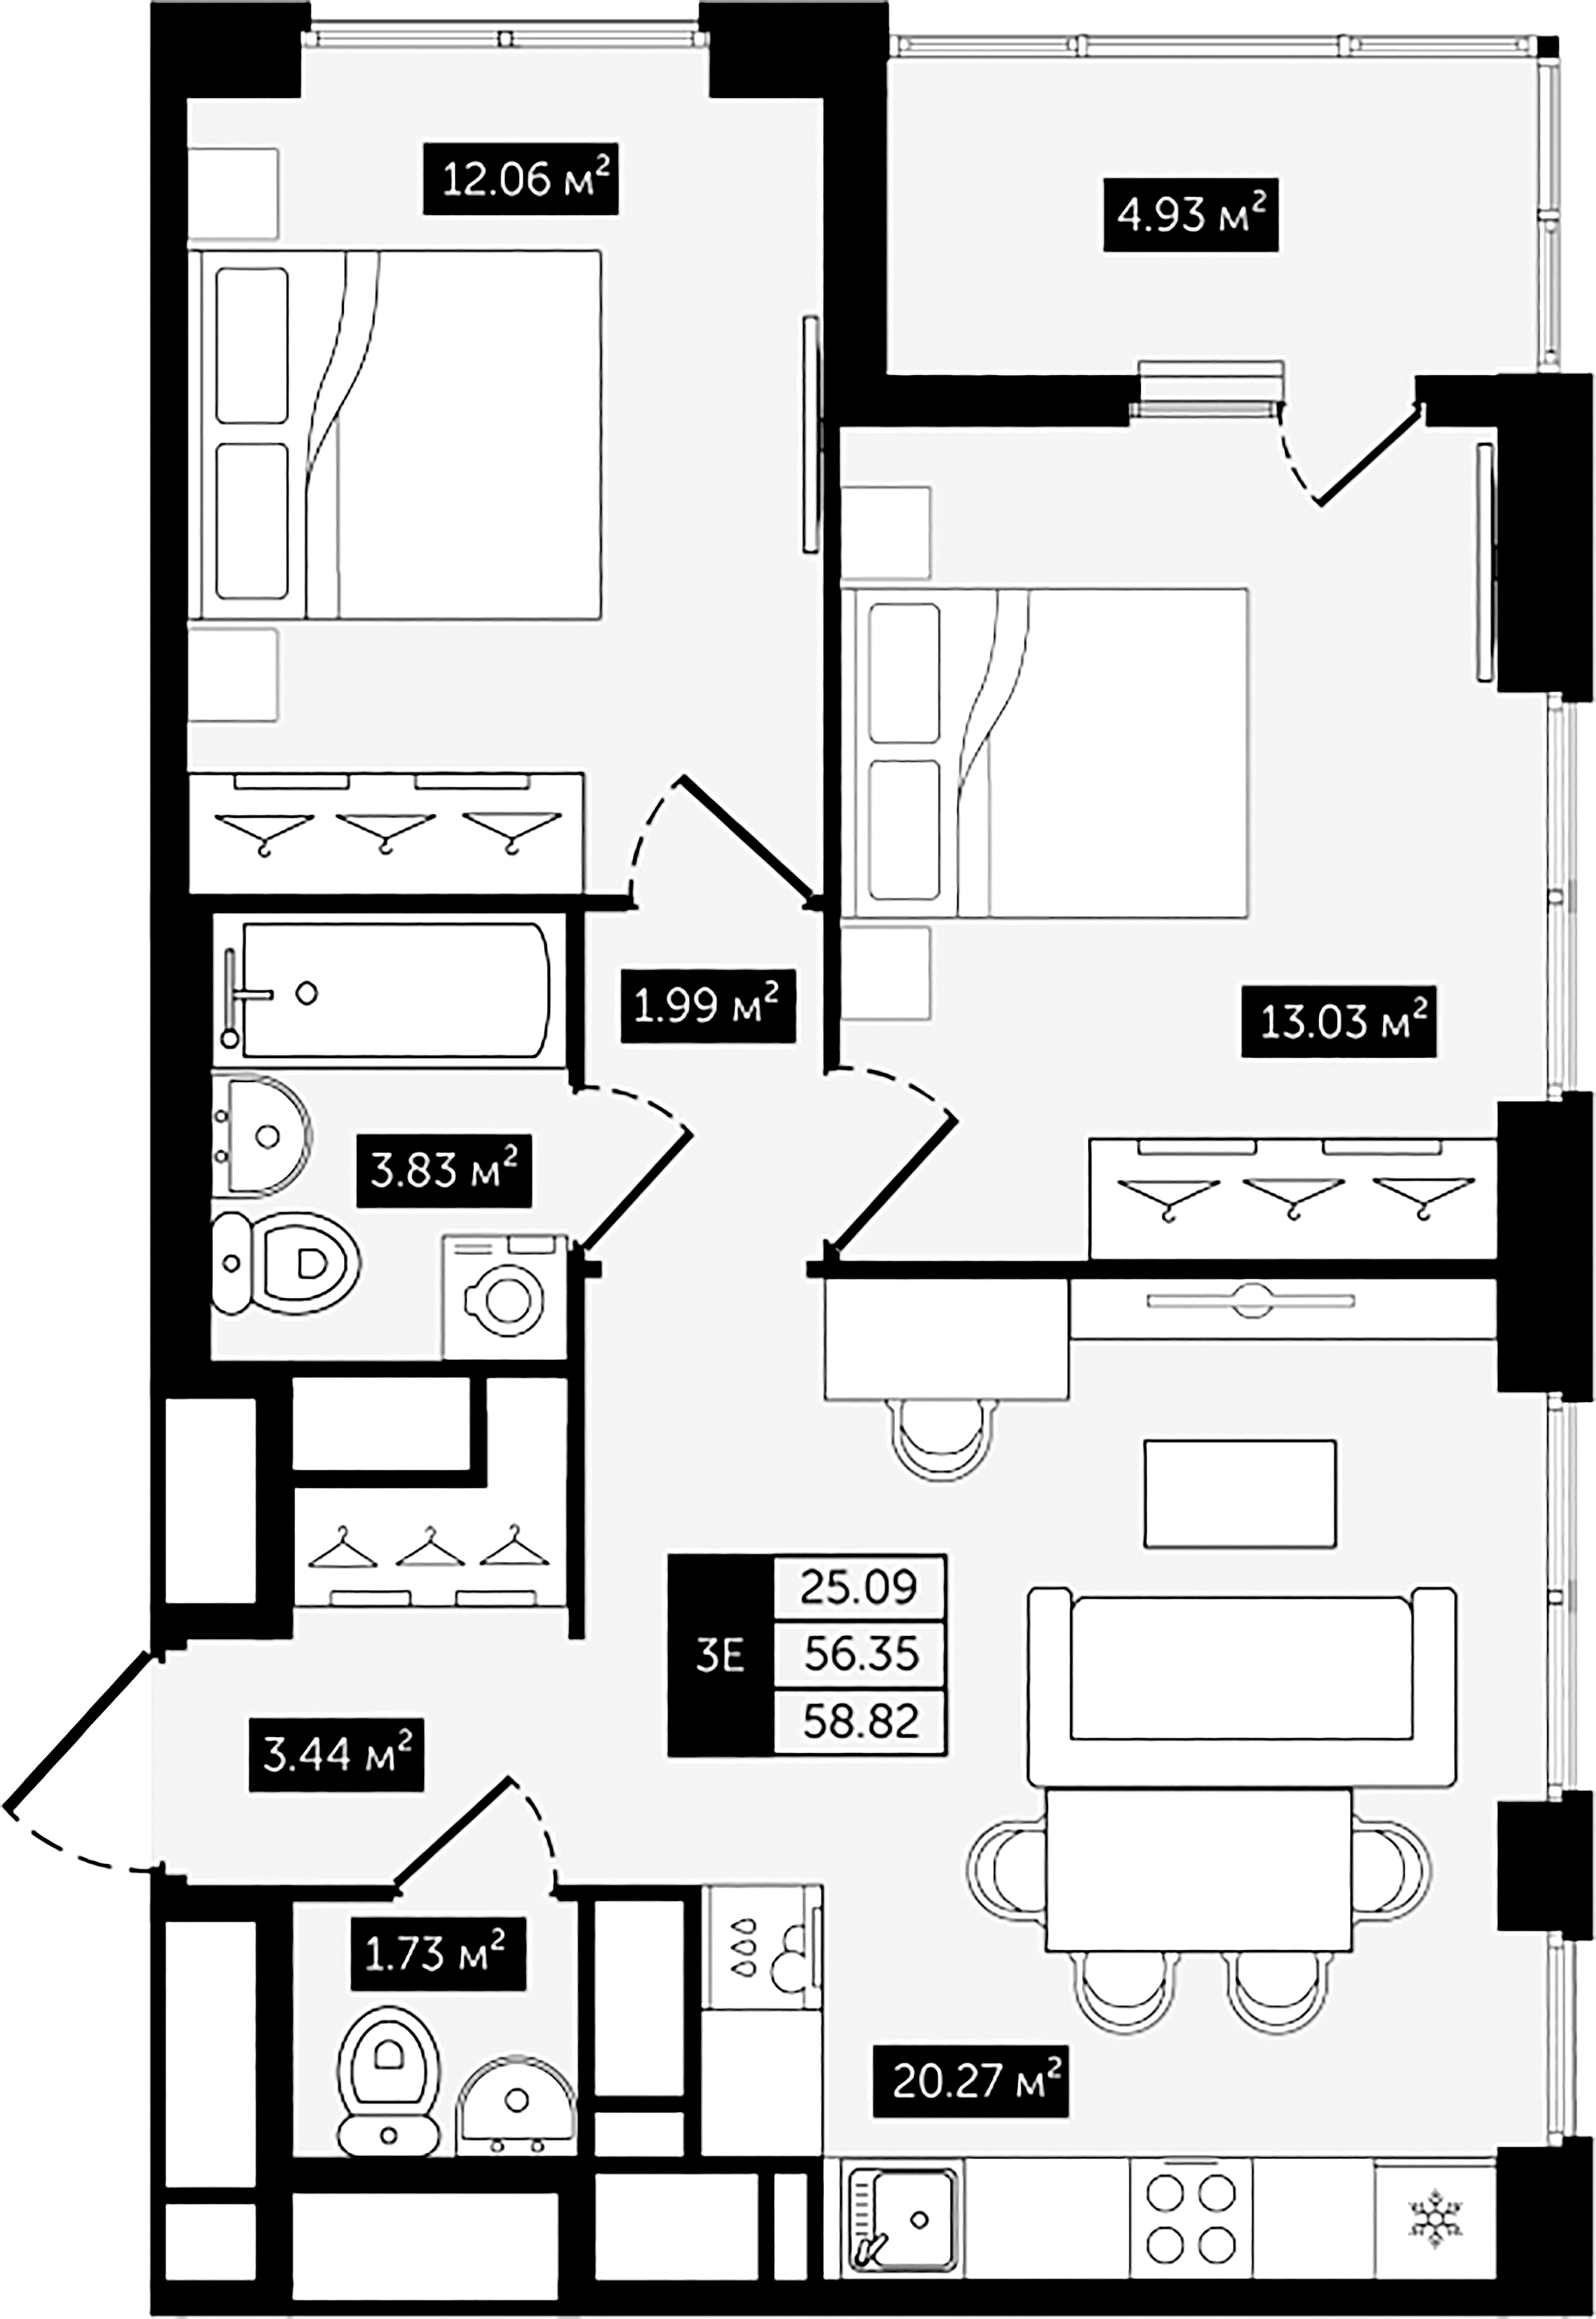 2-комнатная квартира №8 в: Клубный дом №8: 58.82 м²; этаж: 8 - купить в Санкт-Петербурге